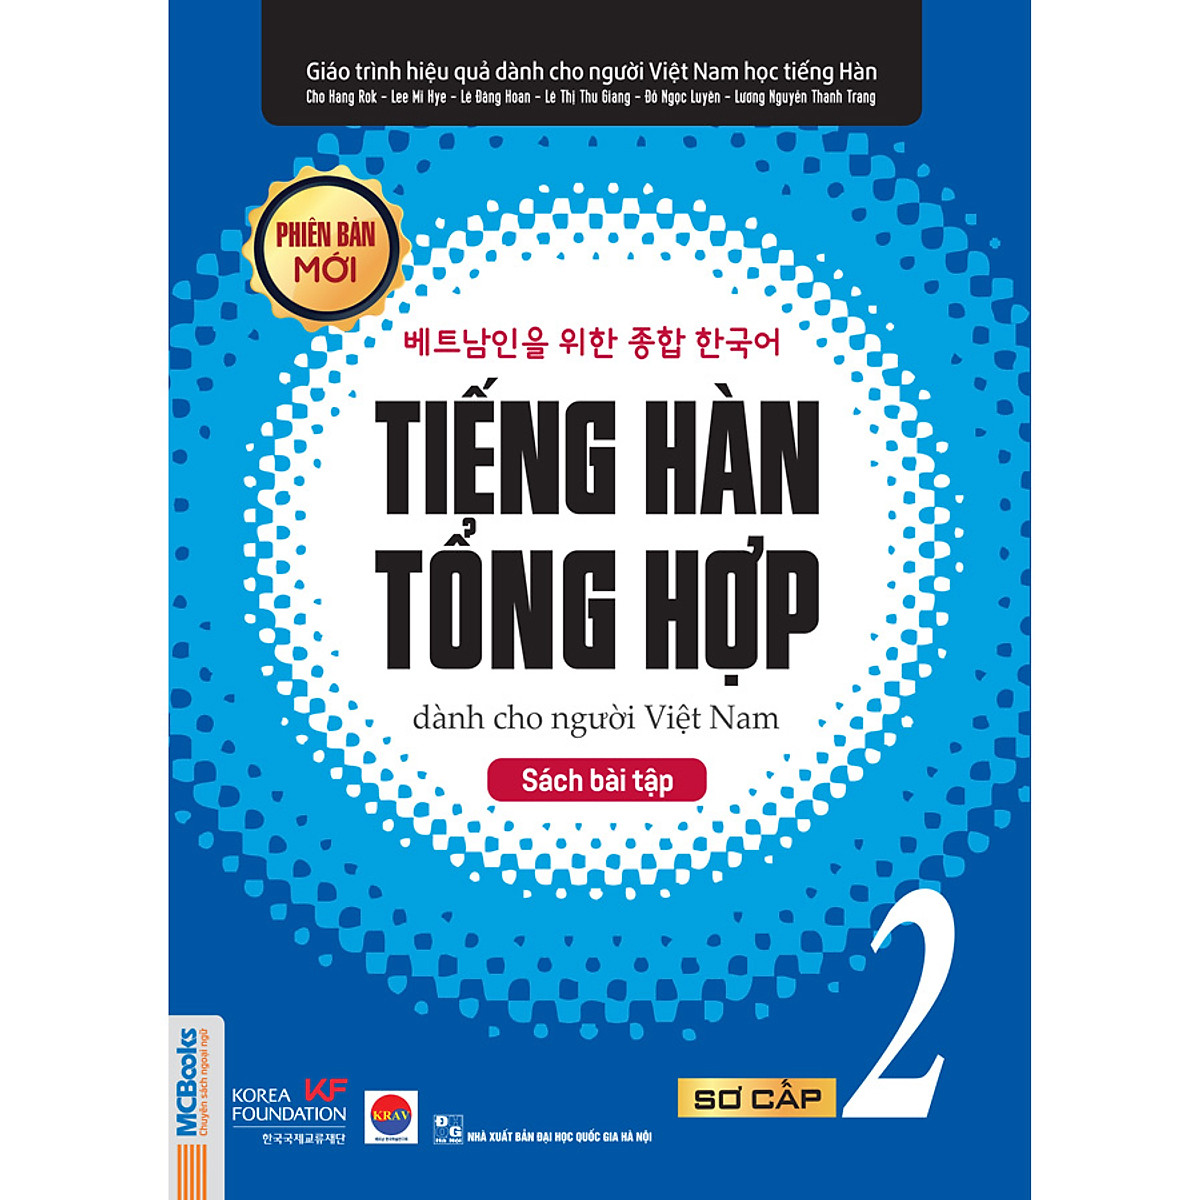 Sách Bài Tập Tiếng Hàn Tổng Hợp Dành Cho Người Việt Nam - Sơ Cấp 2 - Phiên Bản Mới Nhất